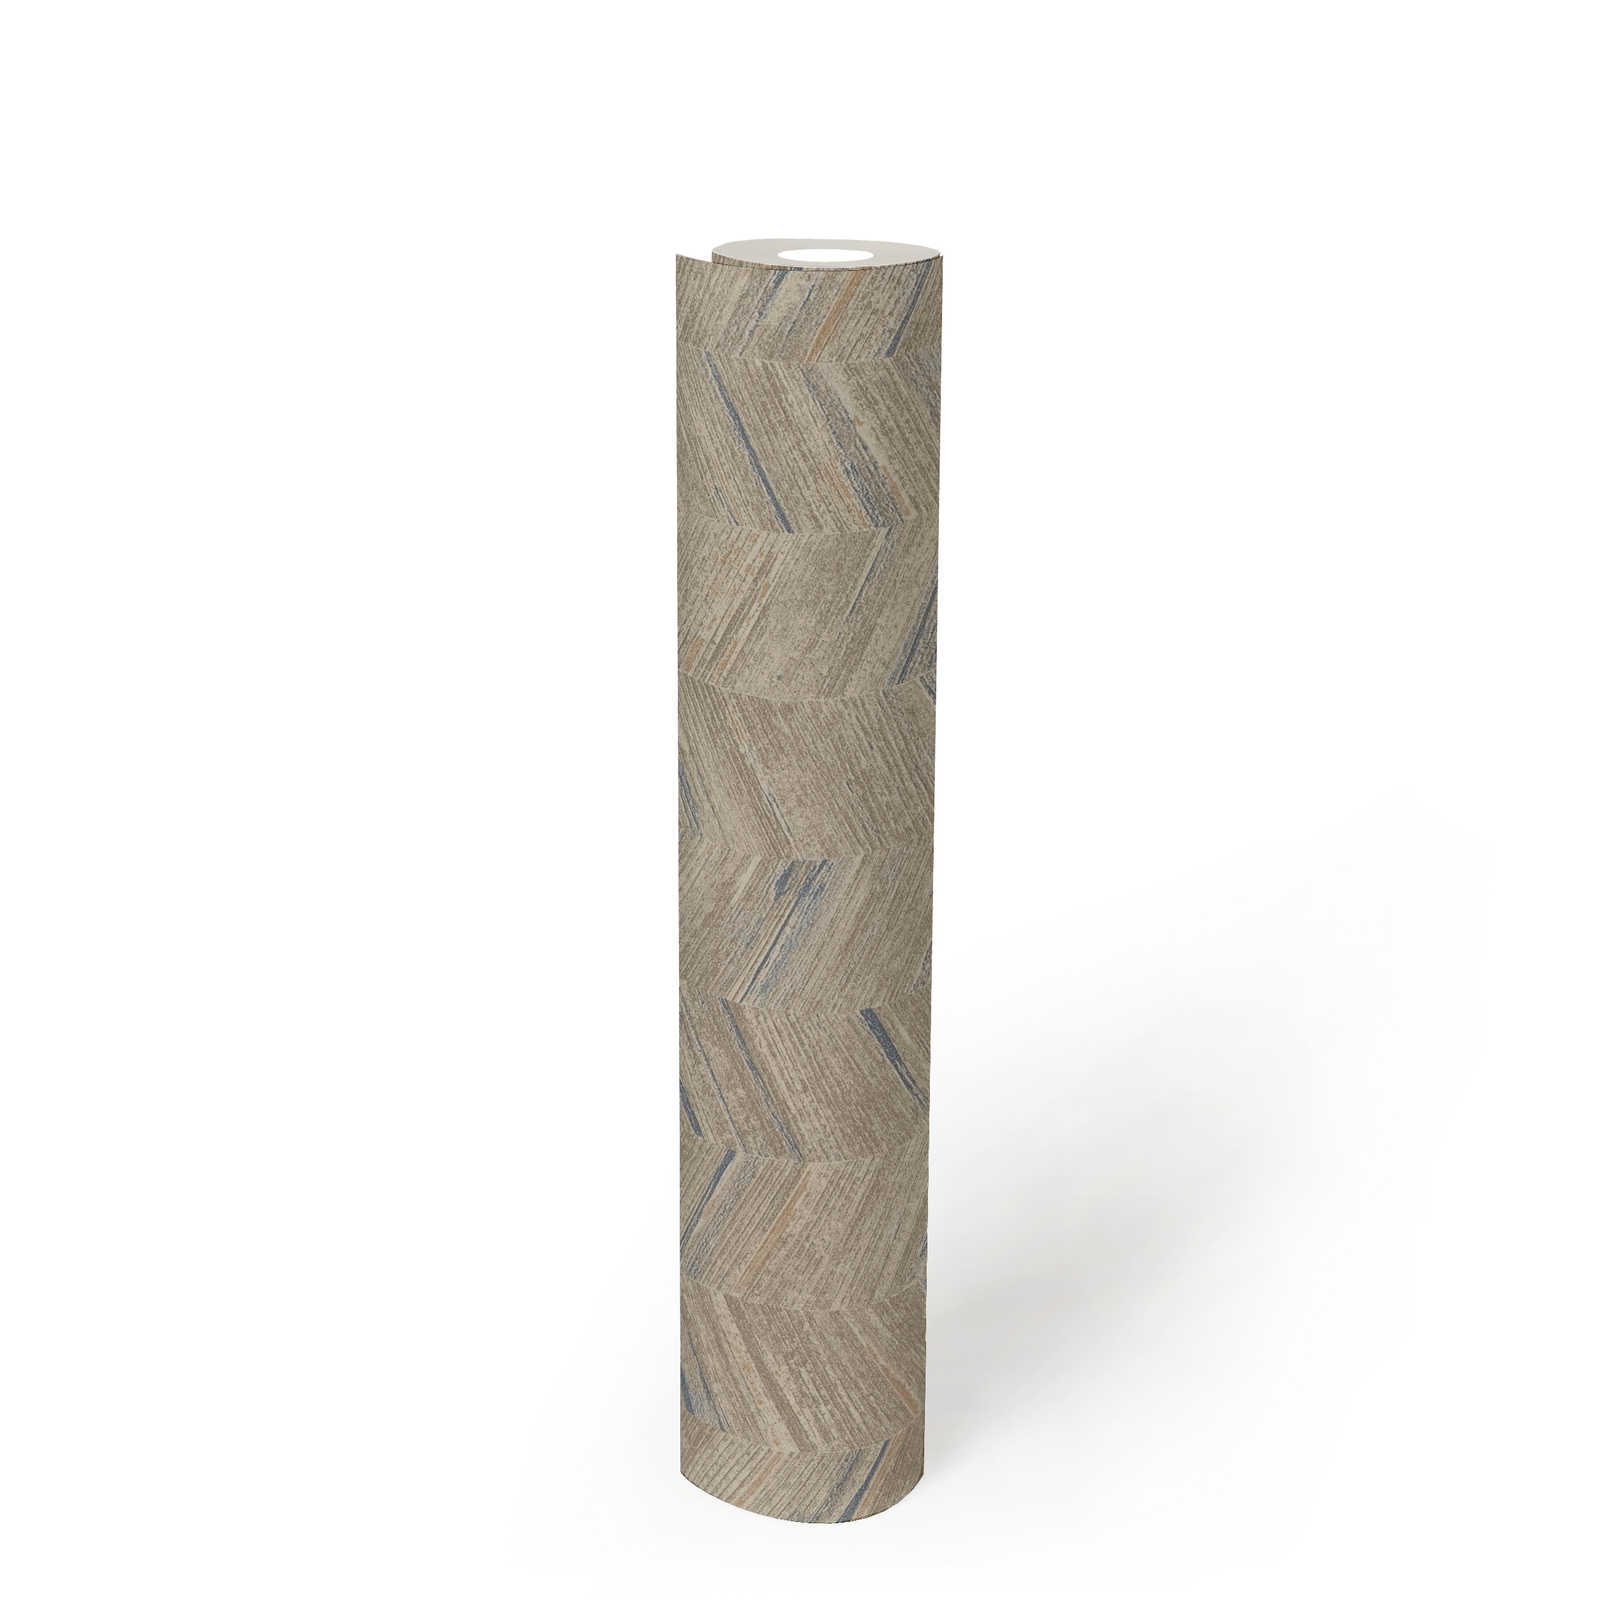             Holzoptik Tapete Fischgrätmuster und Ethno Stil – Beige, Grau
        